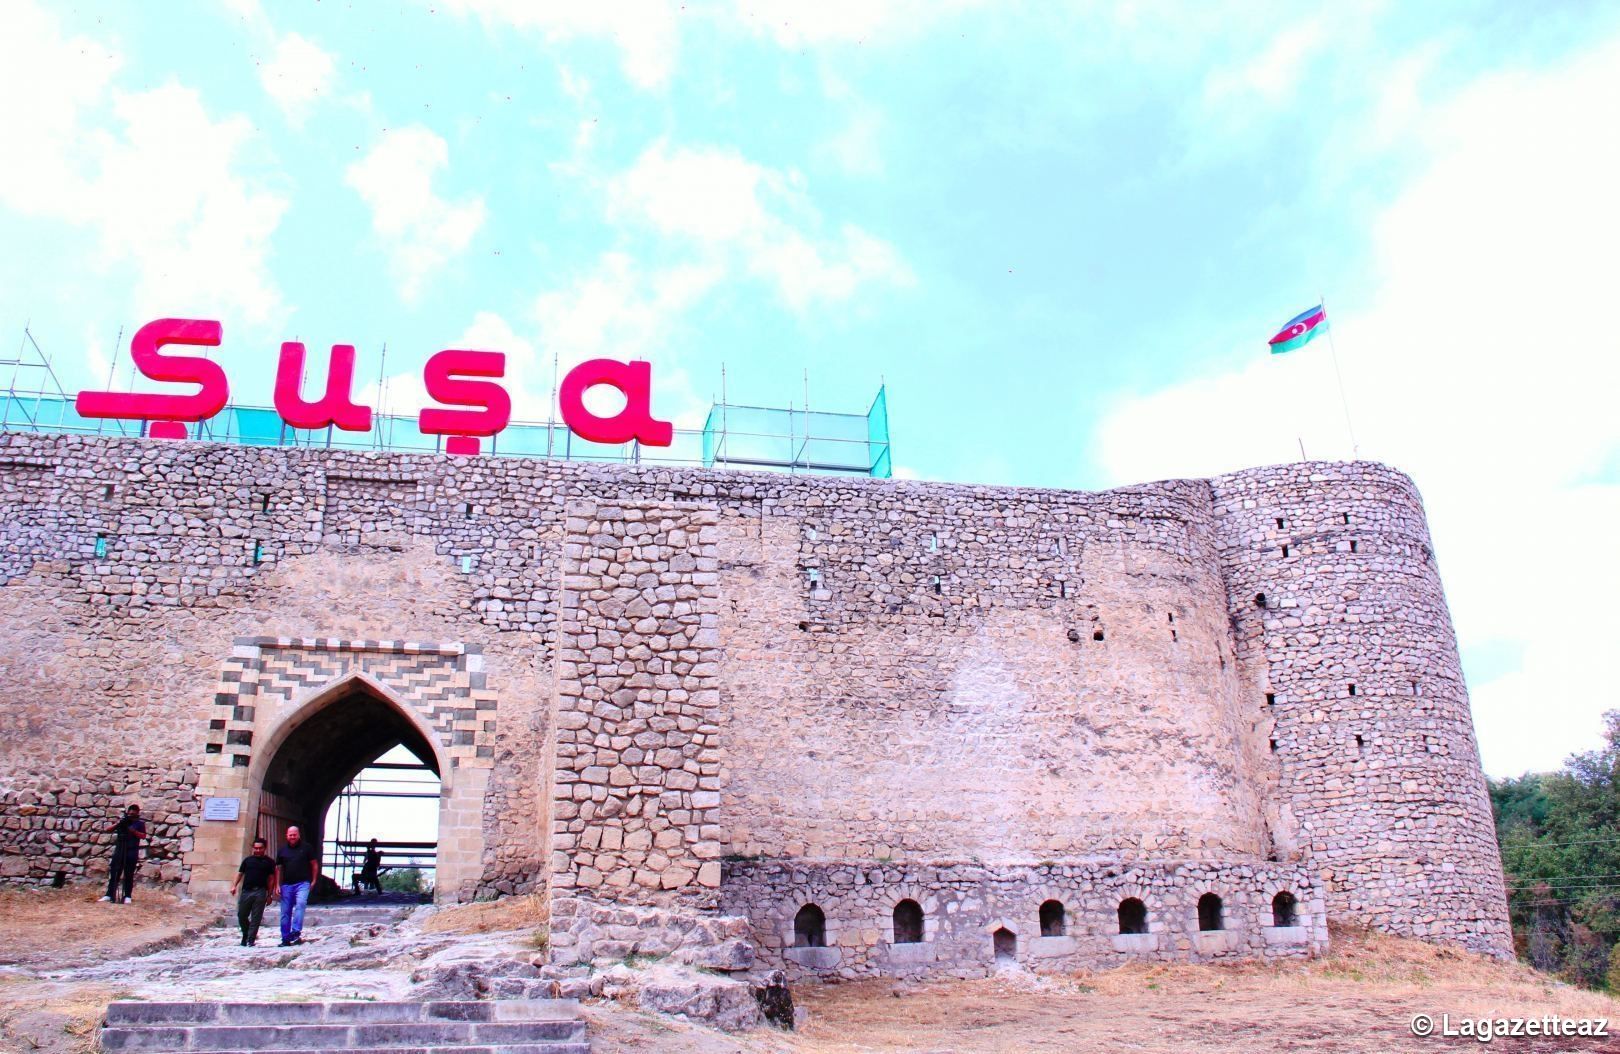 La ville azerbaïdjanaise de Choucha proposée pour le titre de capitale culturelle du monde turcique